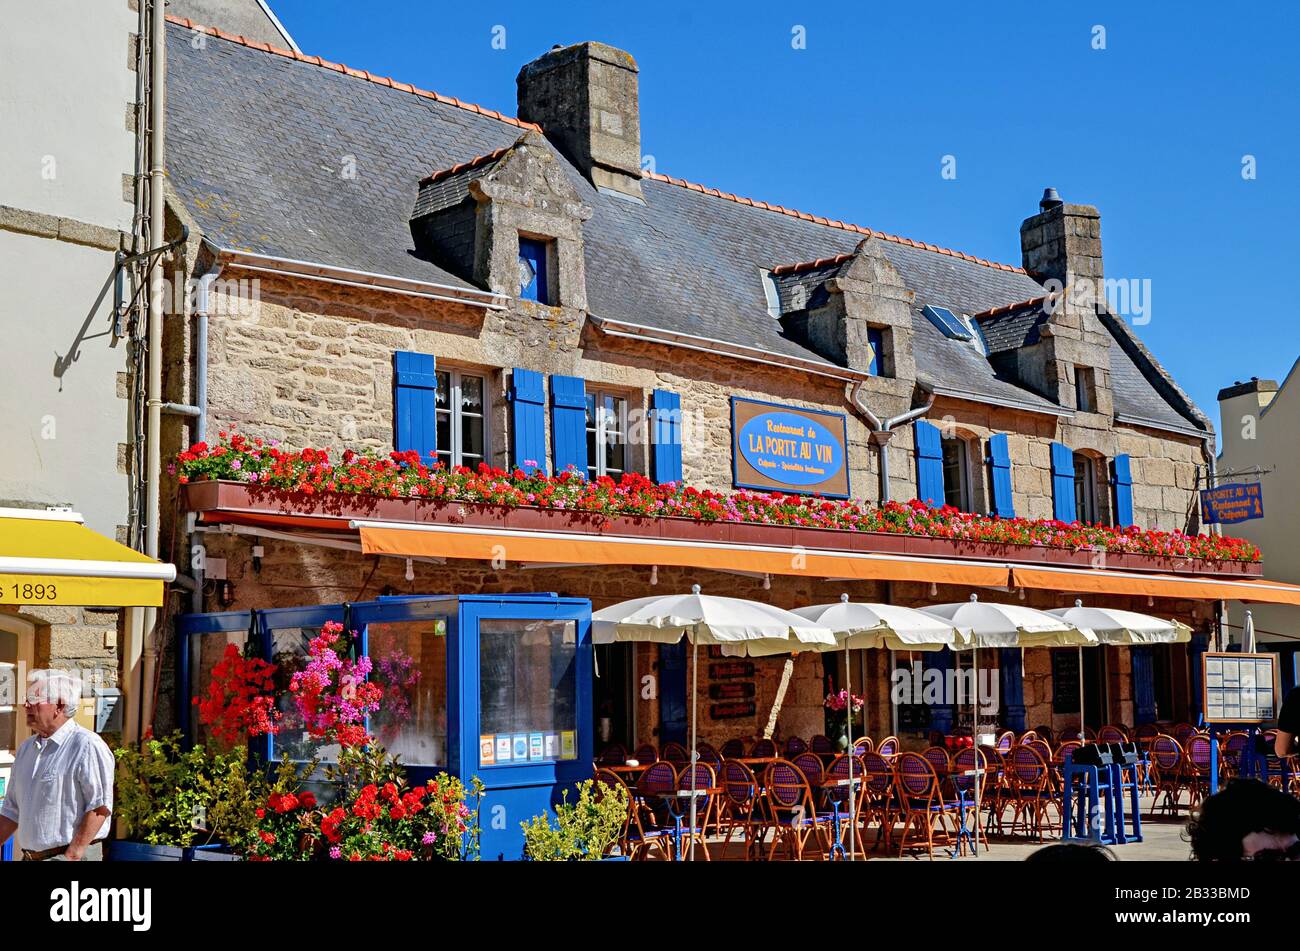 Locronan, Francia - 15 luglio 2016: Strade medievali di Locronan, una piccola città della Bretagna, Francia. È uno dei più bei villaggi di Francia Foto Stock